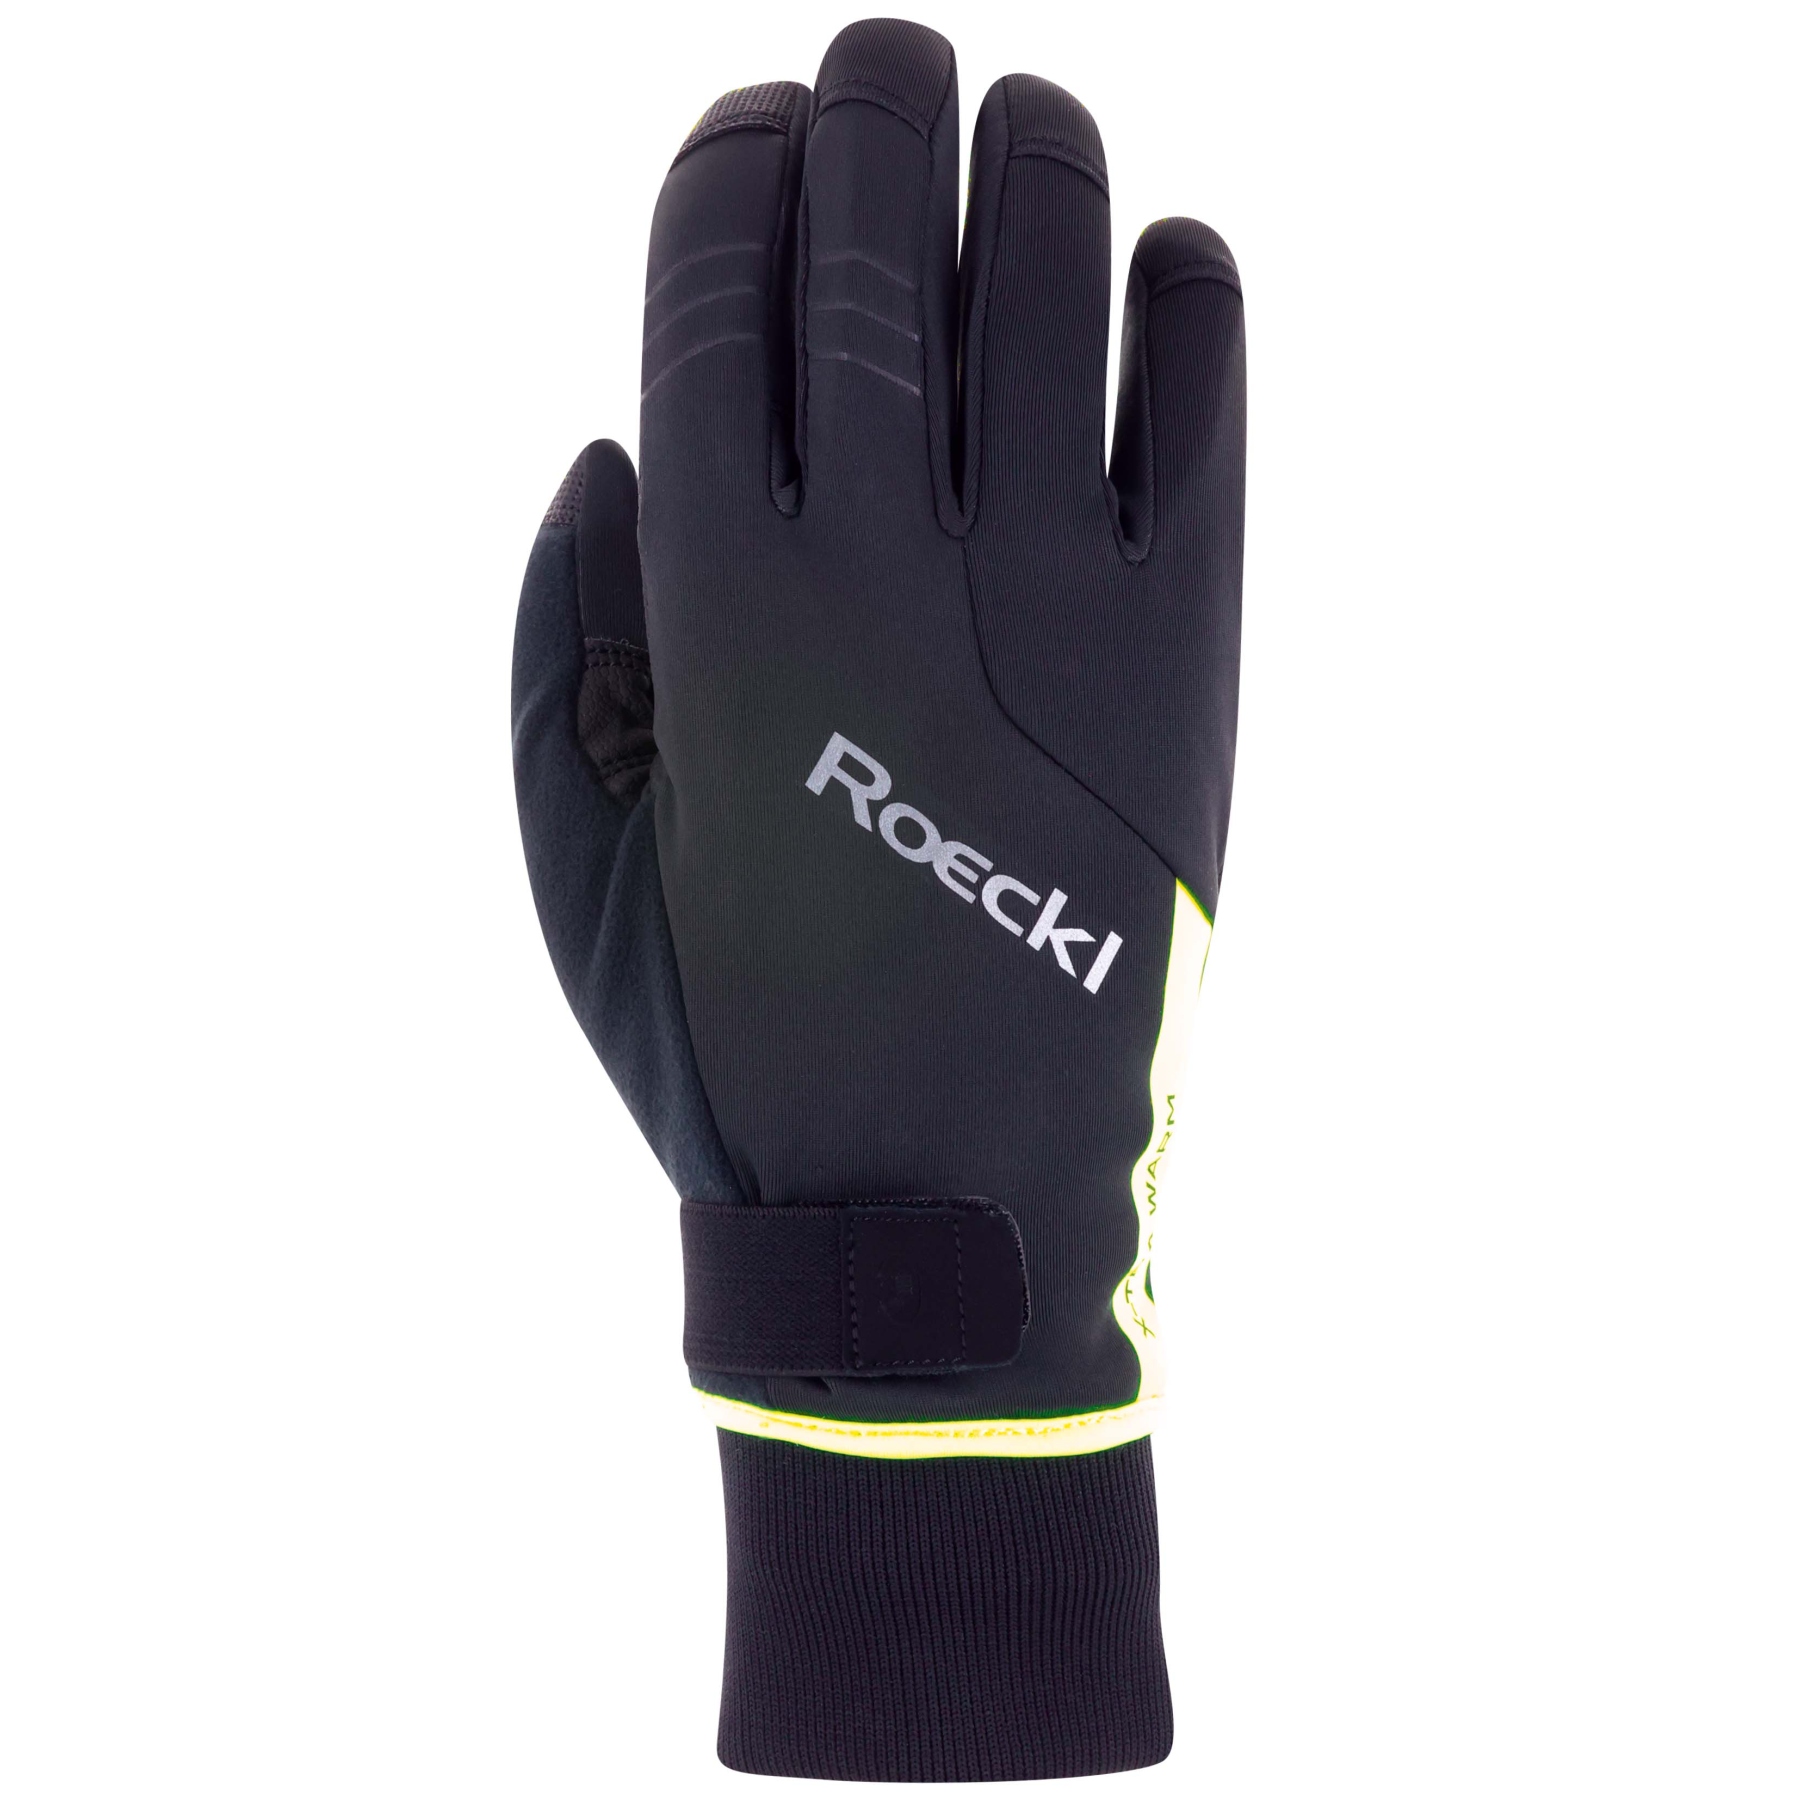 Productfoto van Roeckl Sports Villach 2 Fietshandschoenen - black/fluo yellow 9210